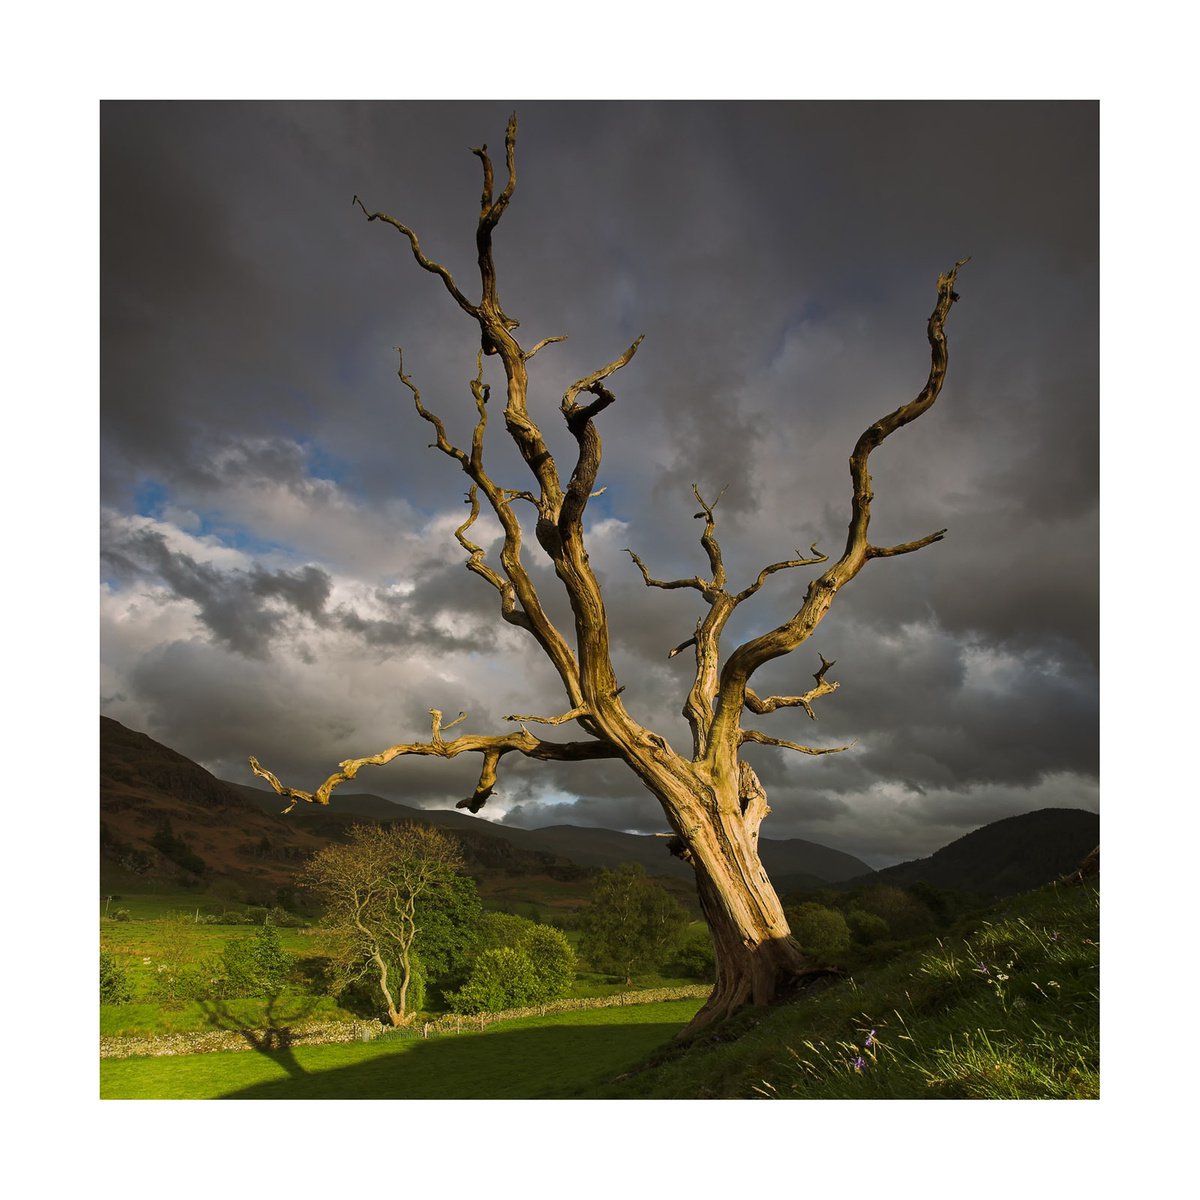 Keswick Tree by David Baker